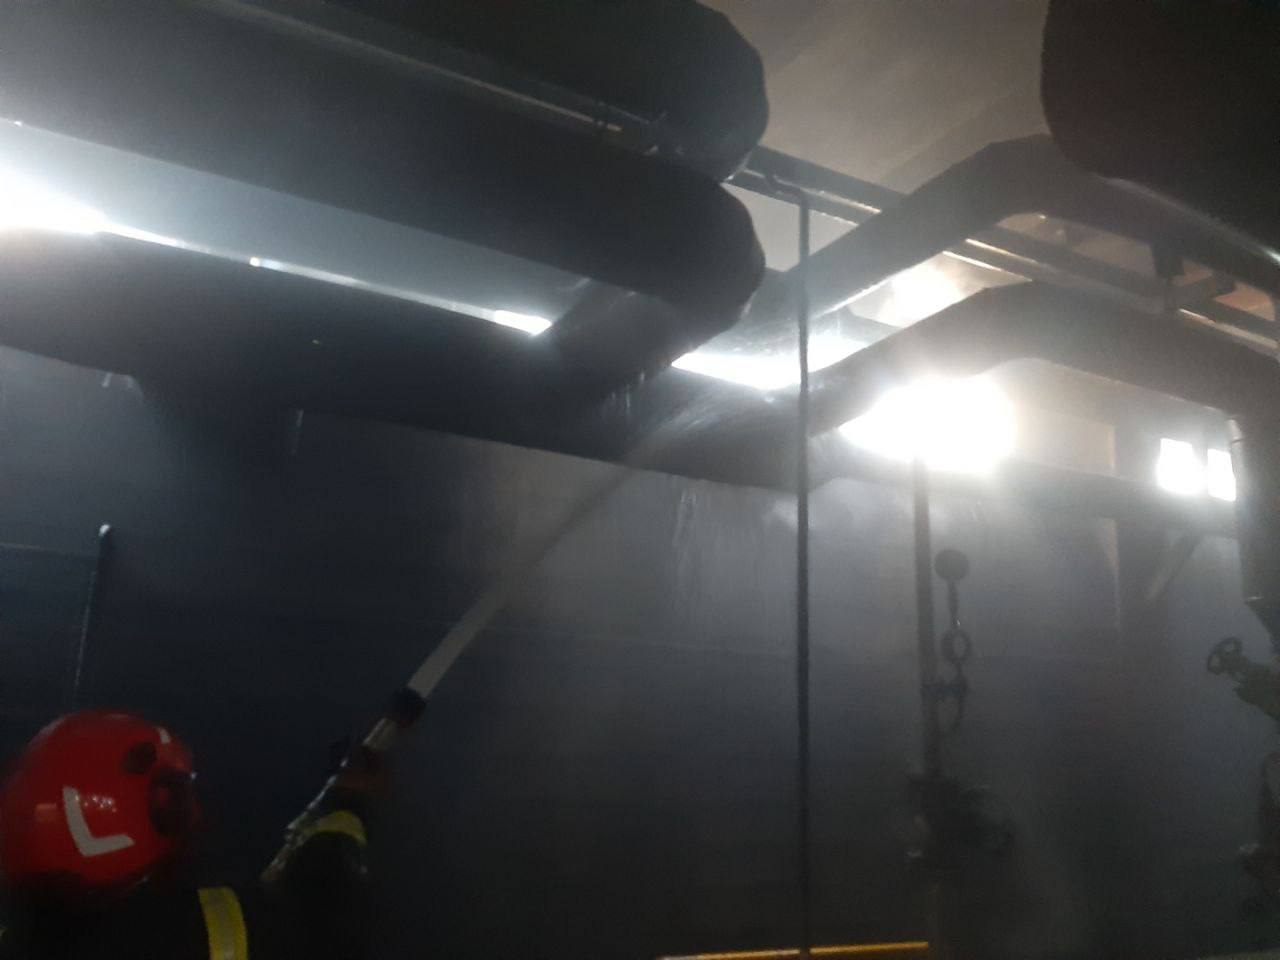 وقوع آتش سوزی در سوله روغن شرکت نئوپان فومنات؛ حریق مهار شد